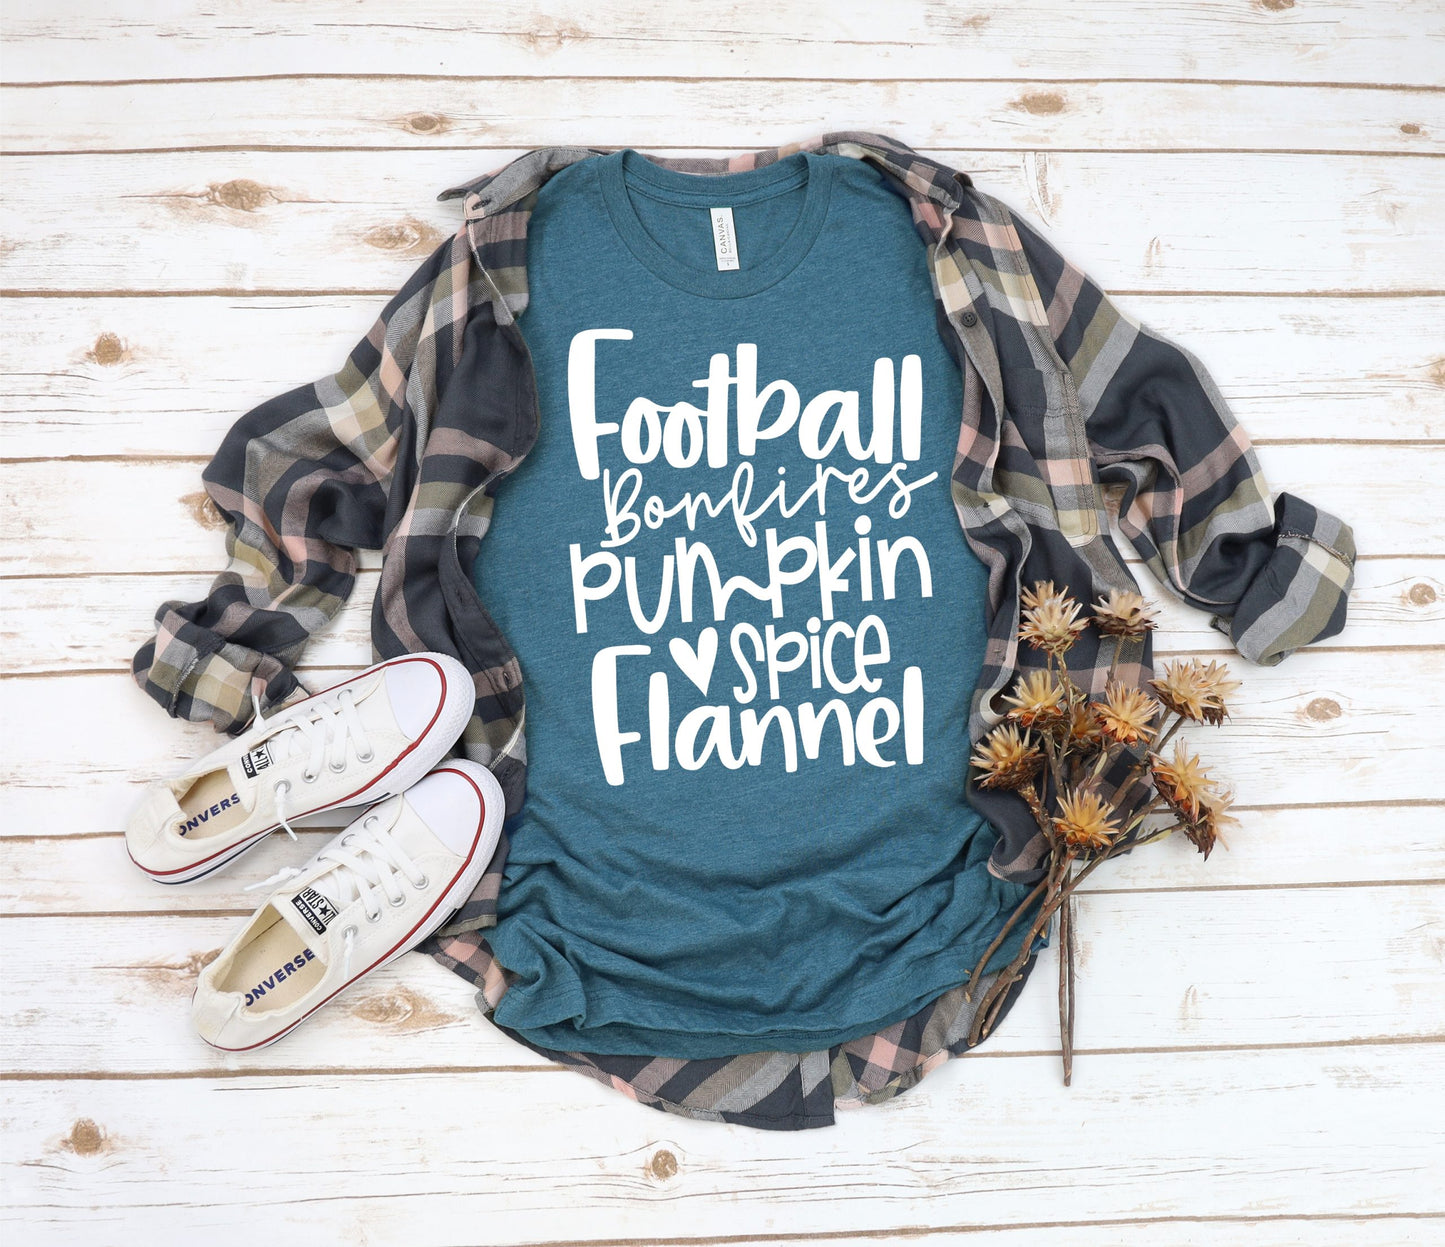 Football, Bonfires, Pumpkin Spice, Flannel Shirt